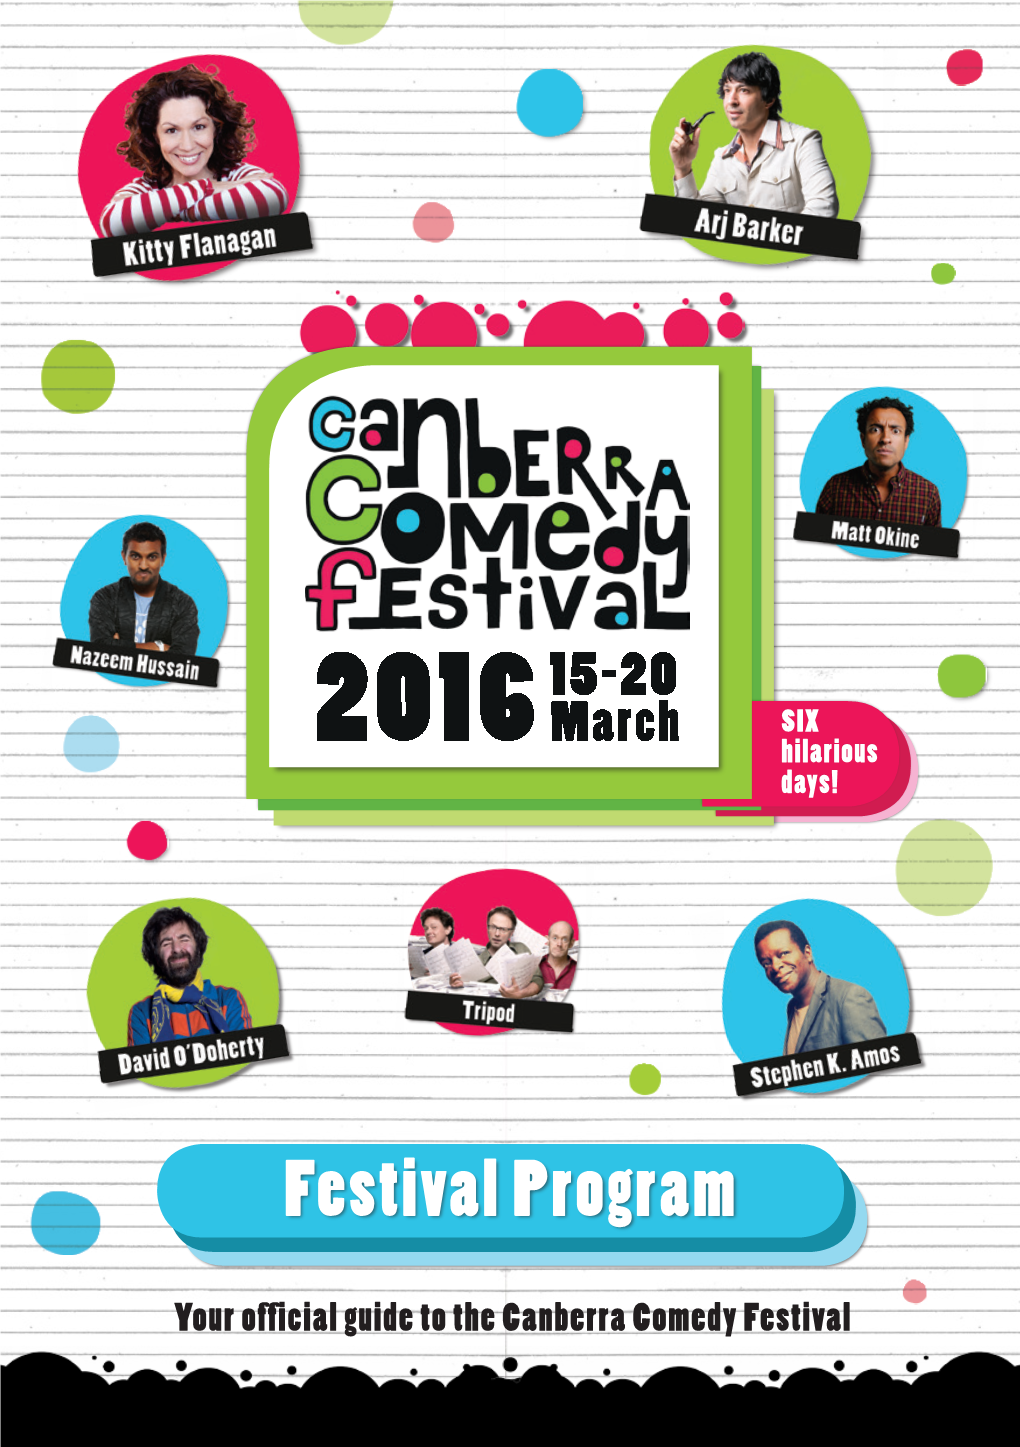 Festival Program